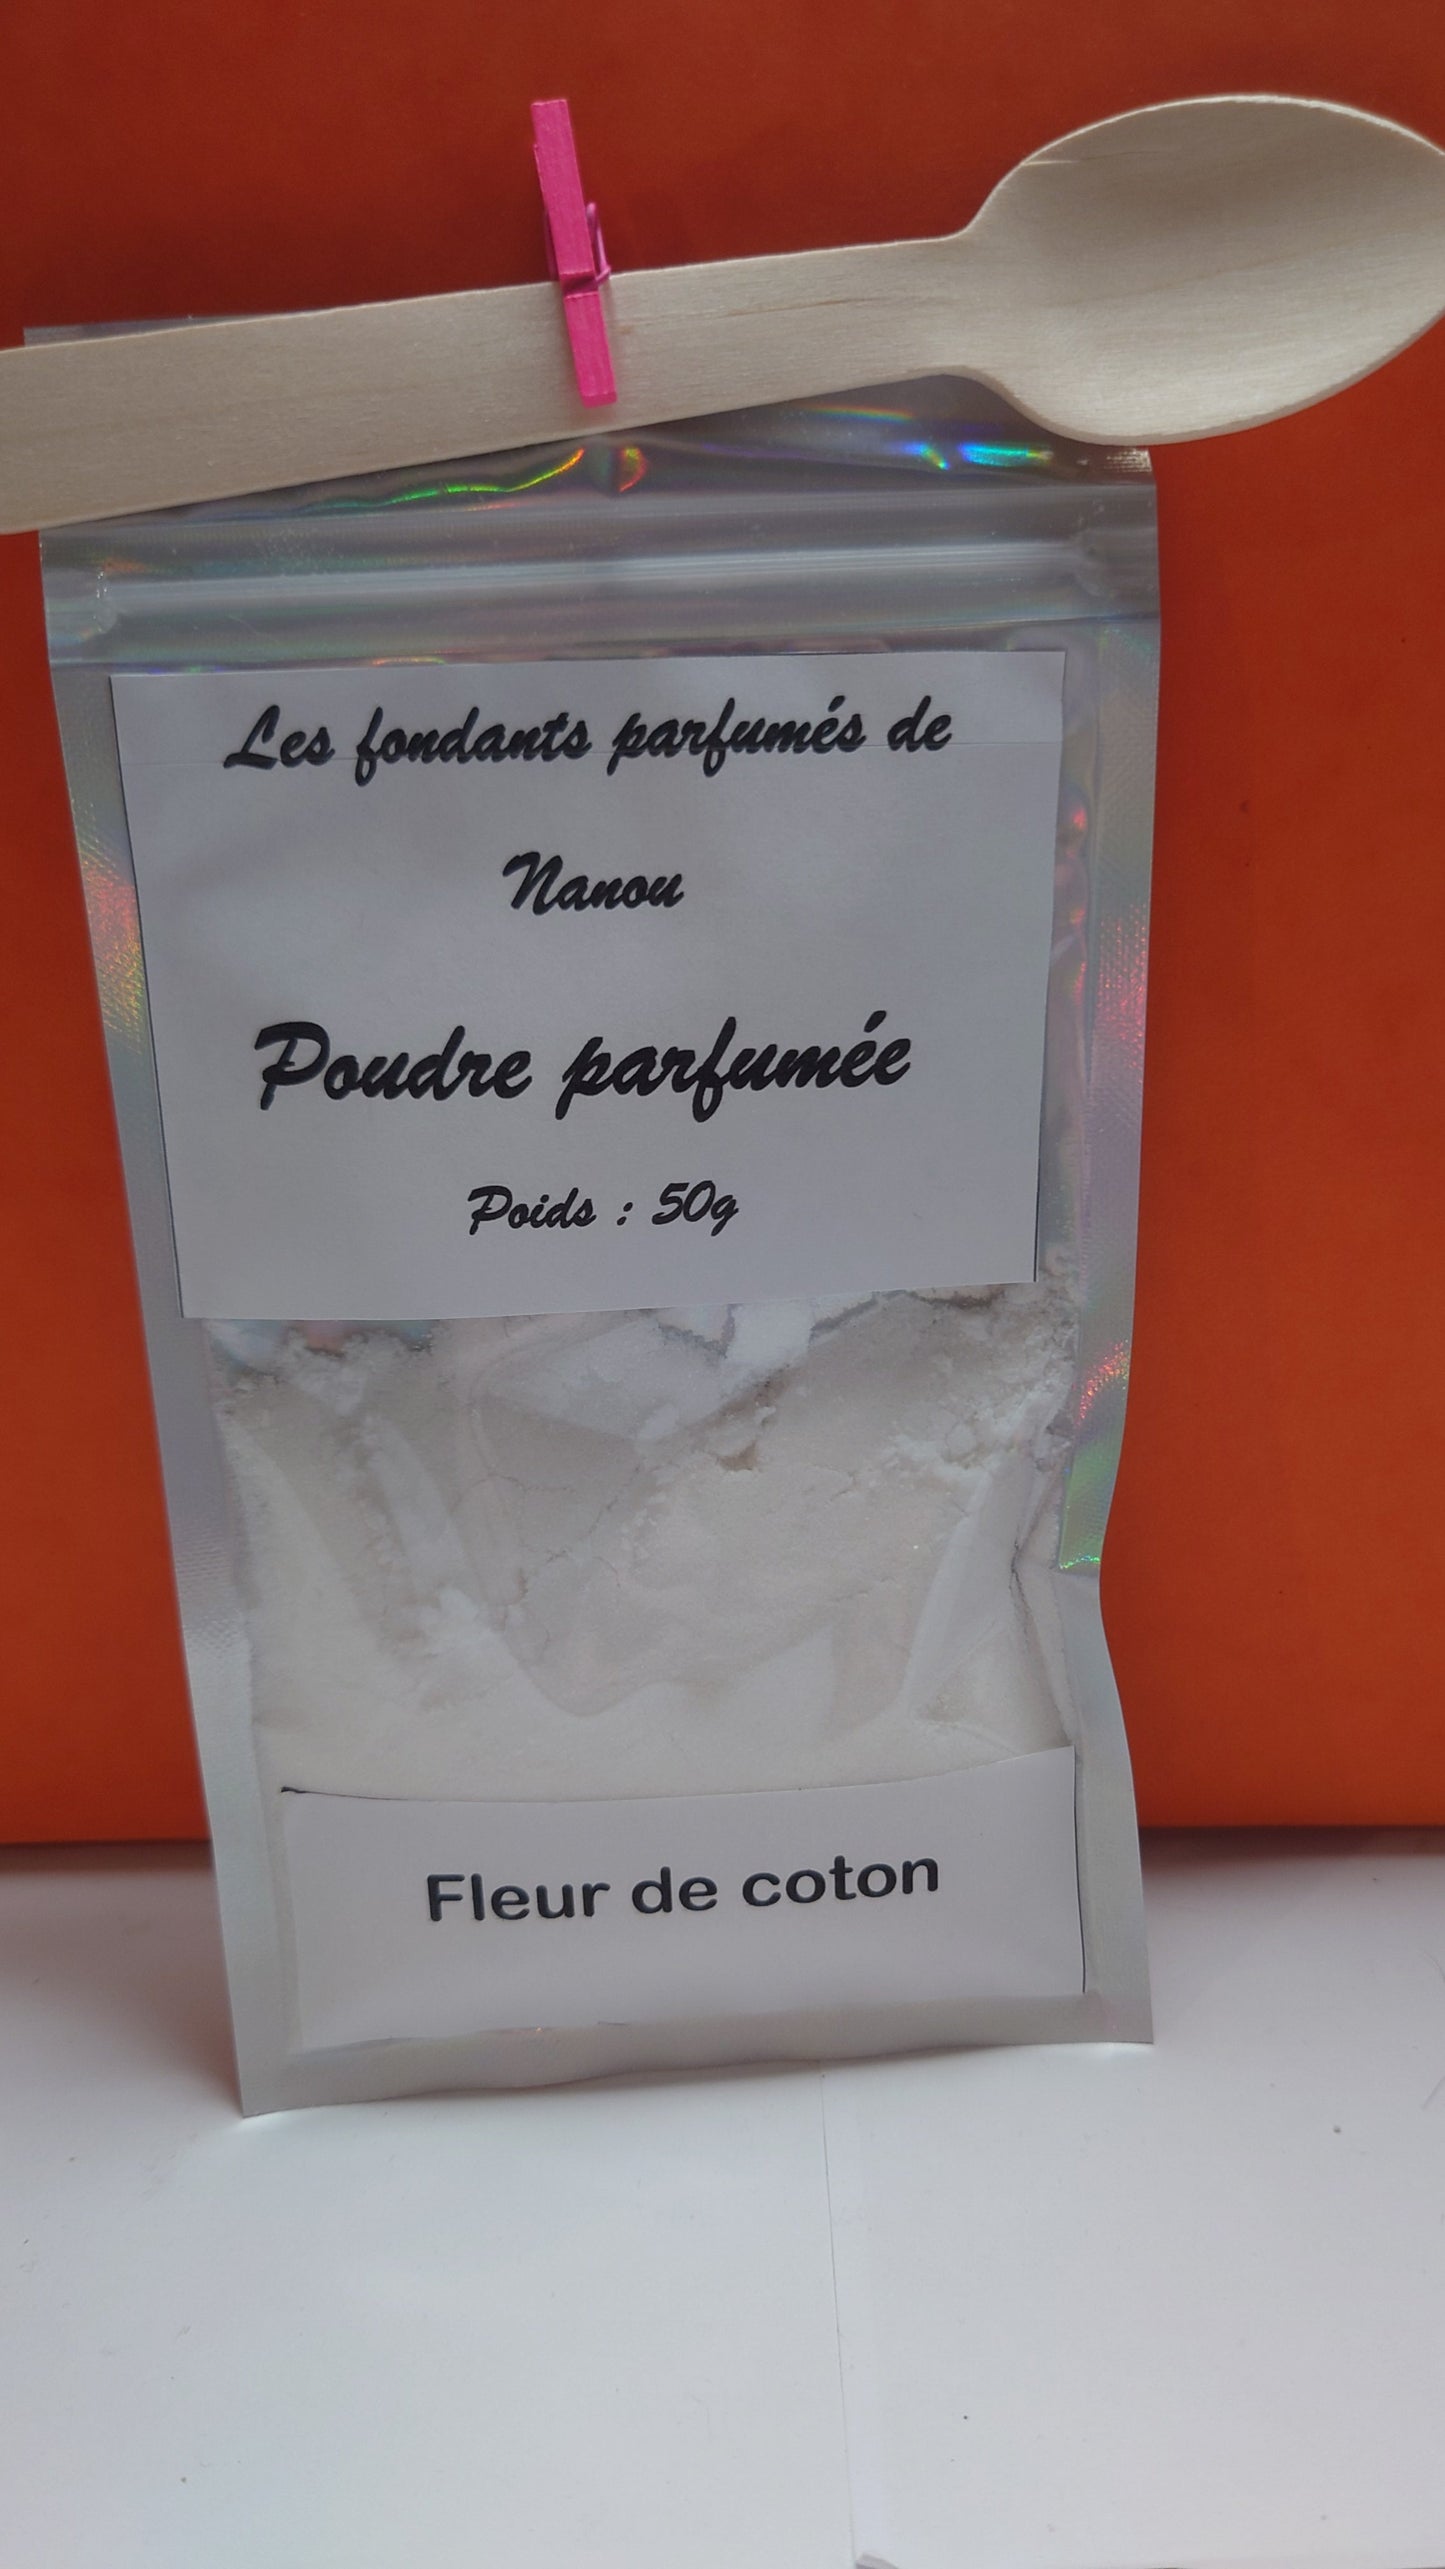 Poudre parfumée pour aspirateur et textiles Fleur de coton